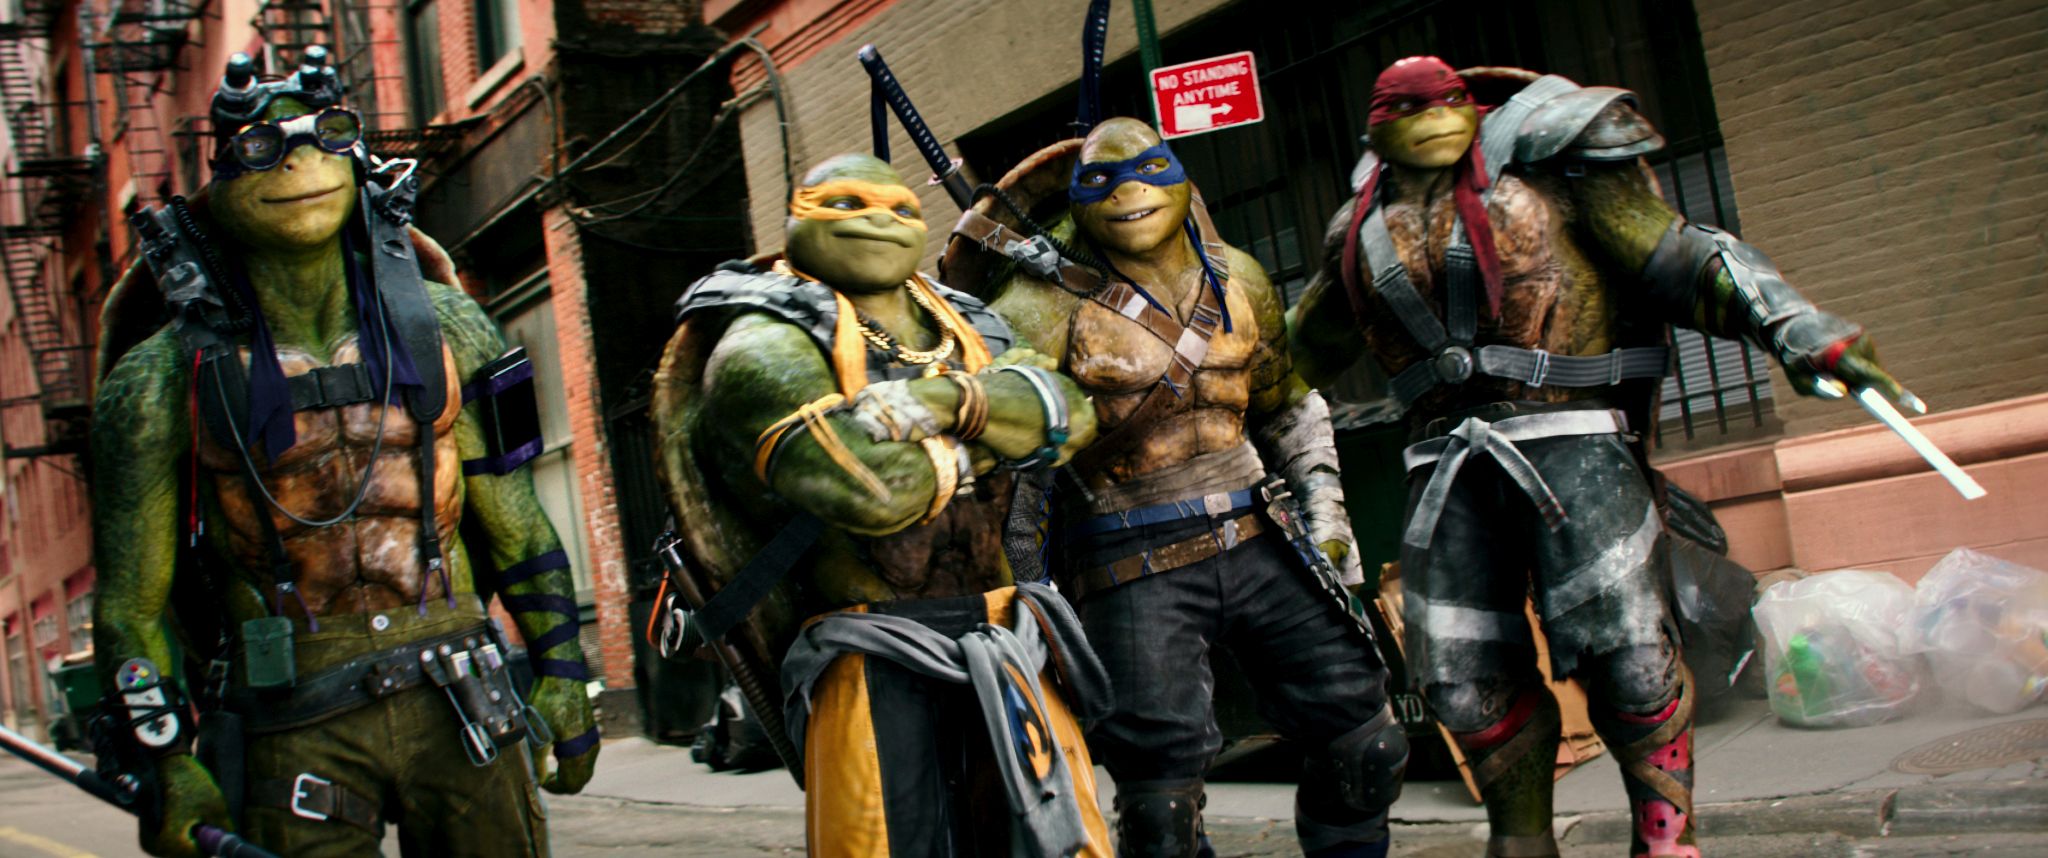 tmnt2028 Teenage Mutant Ninja Turtles 2 Trailer Screenshots